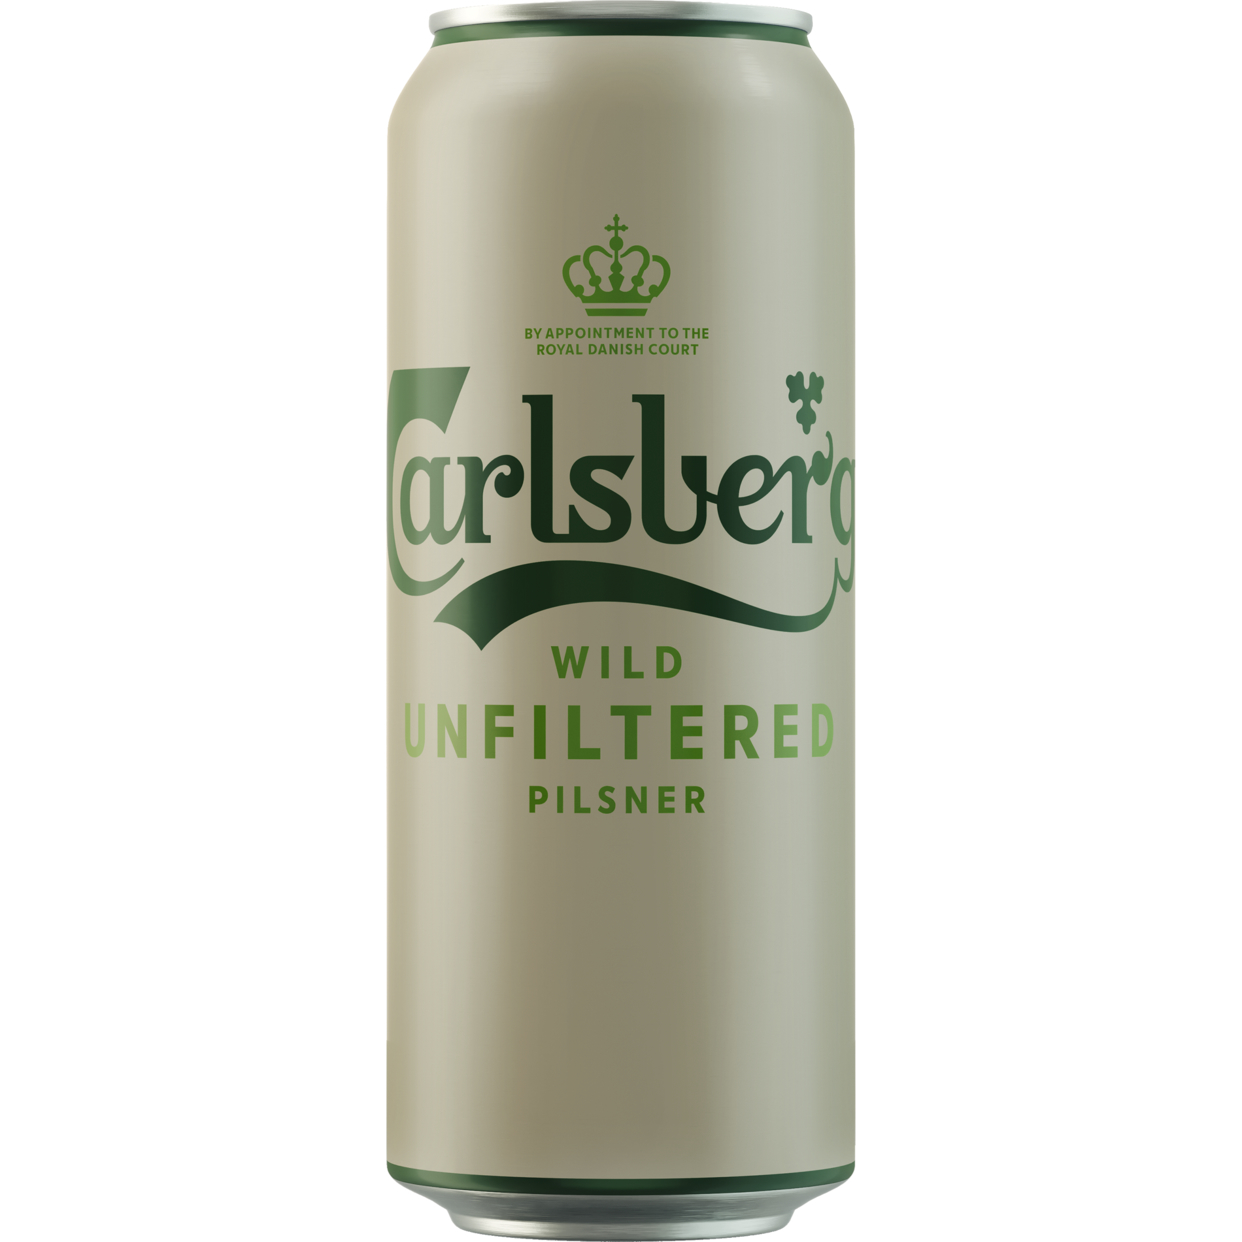 Пиво светлое нефильтрованное неосветлённое "Карлсберг Вайлд Нефильтрованное" ("Carlsberg Wild Unfiltered") пастеризованное, ж/б 0,45 по акции в Пятерочке